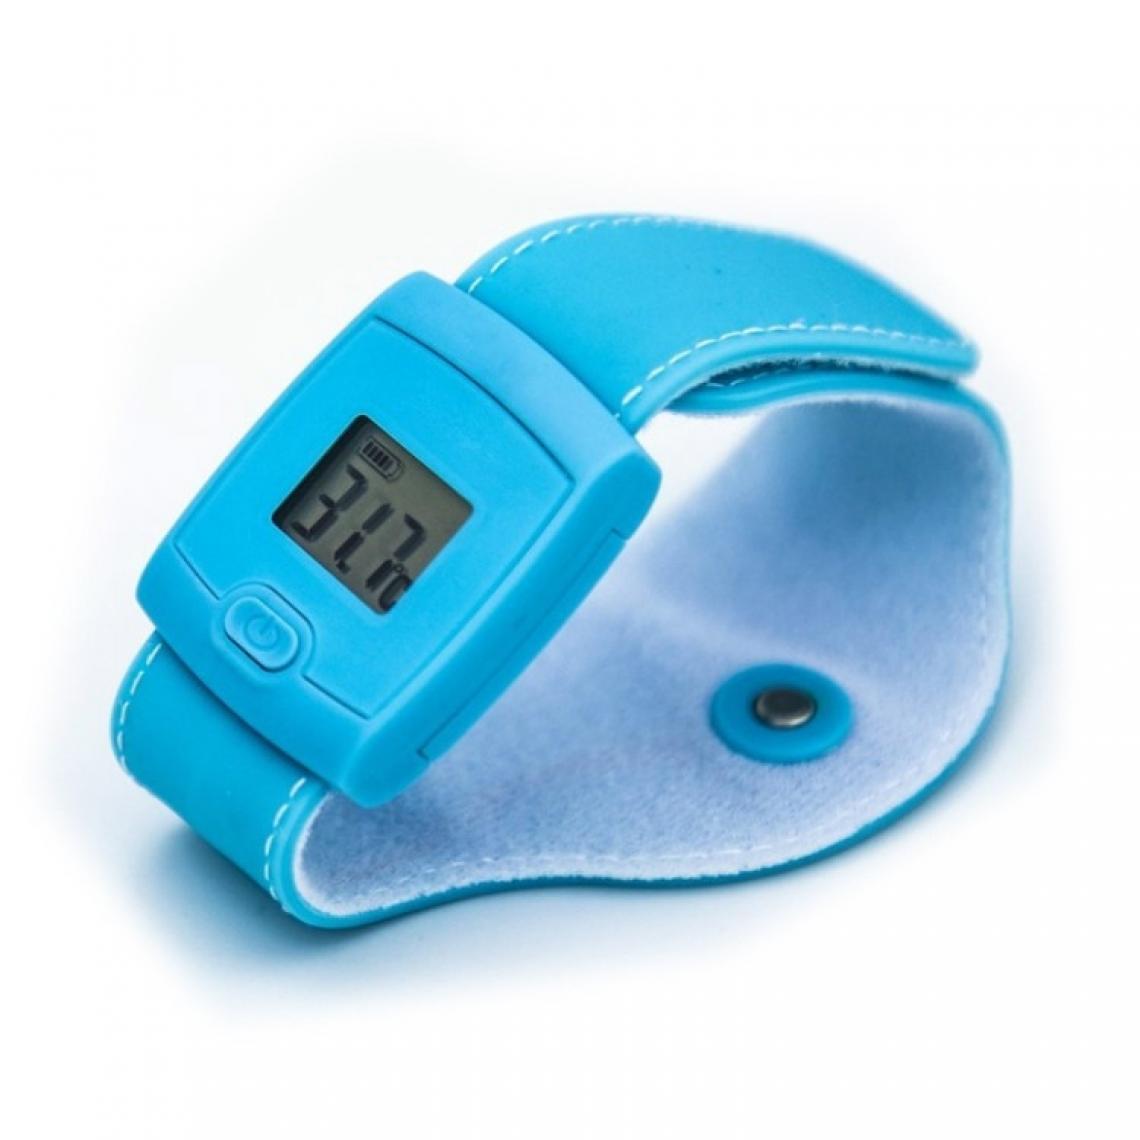 Wewoo - Bracelet de température corporelle intelligent Thermomètre Bluetooth pour bébé enfant bleu - Thermomètre connecté